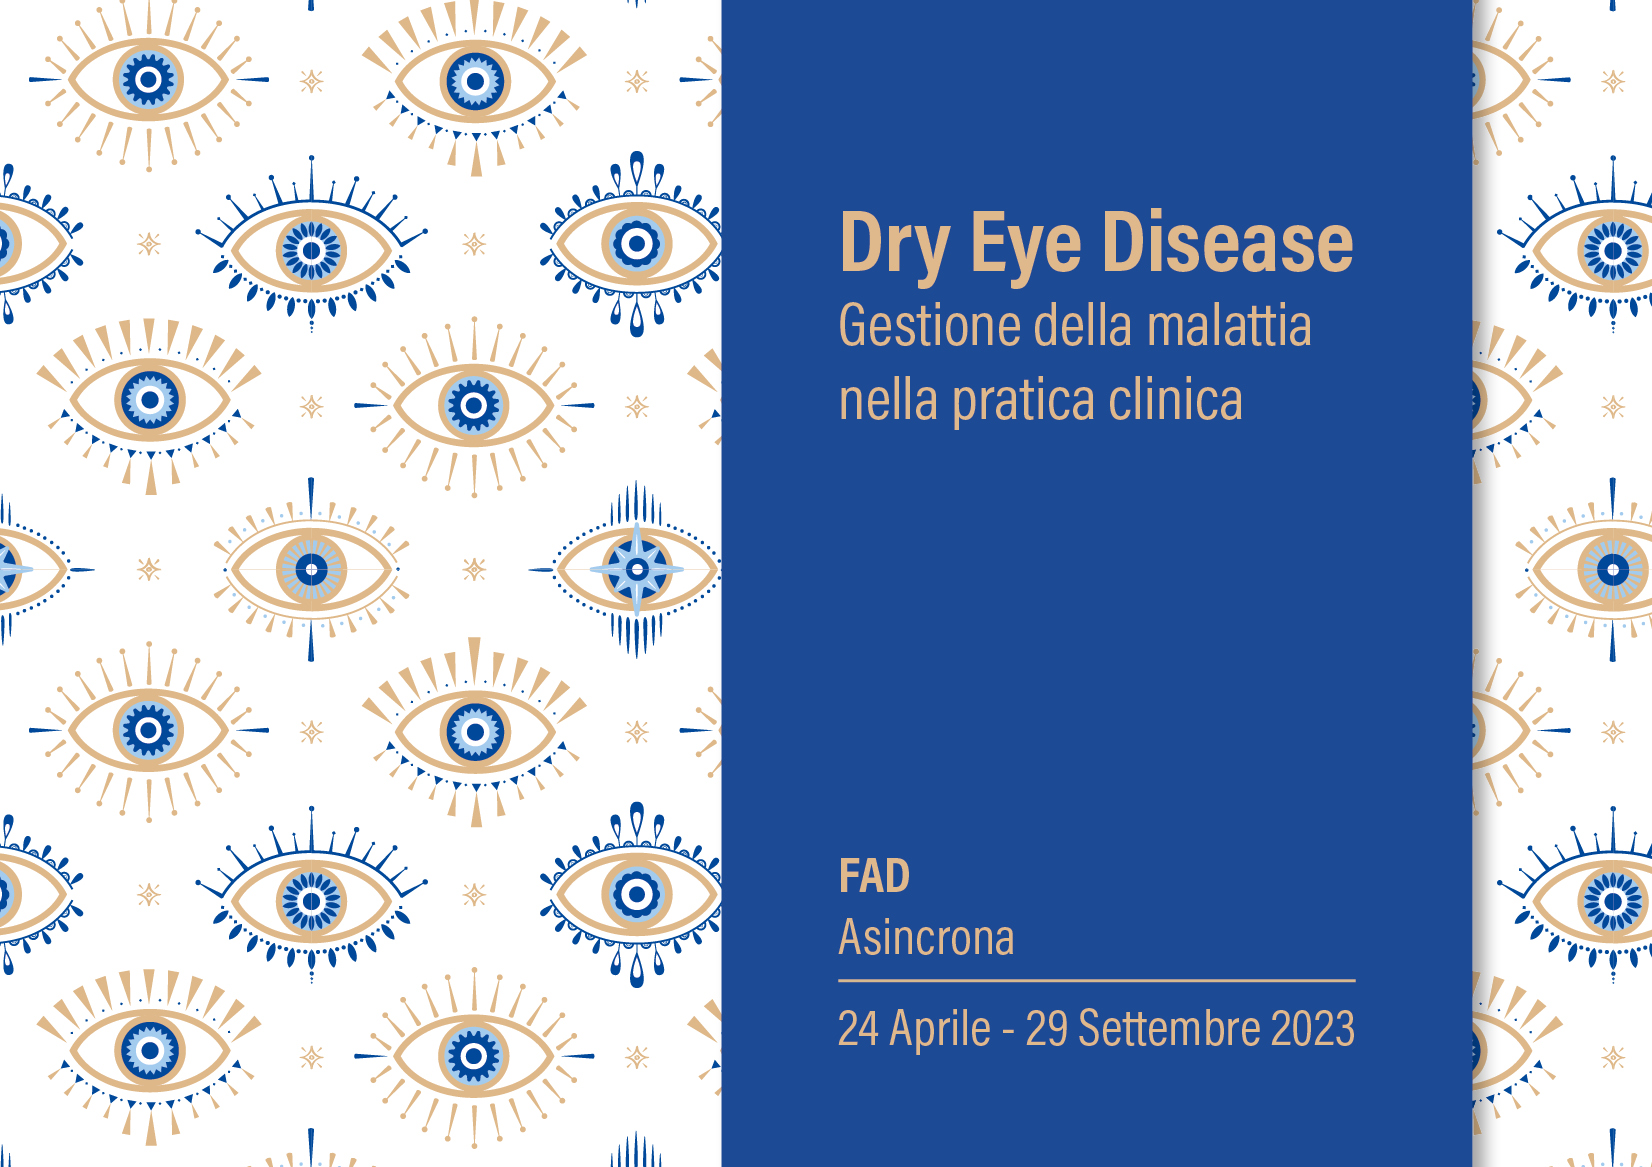 Dry Eye Disease – Gestione della malattia nella pratica clinica